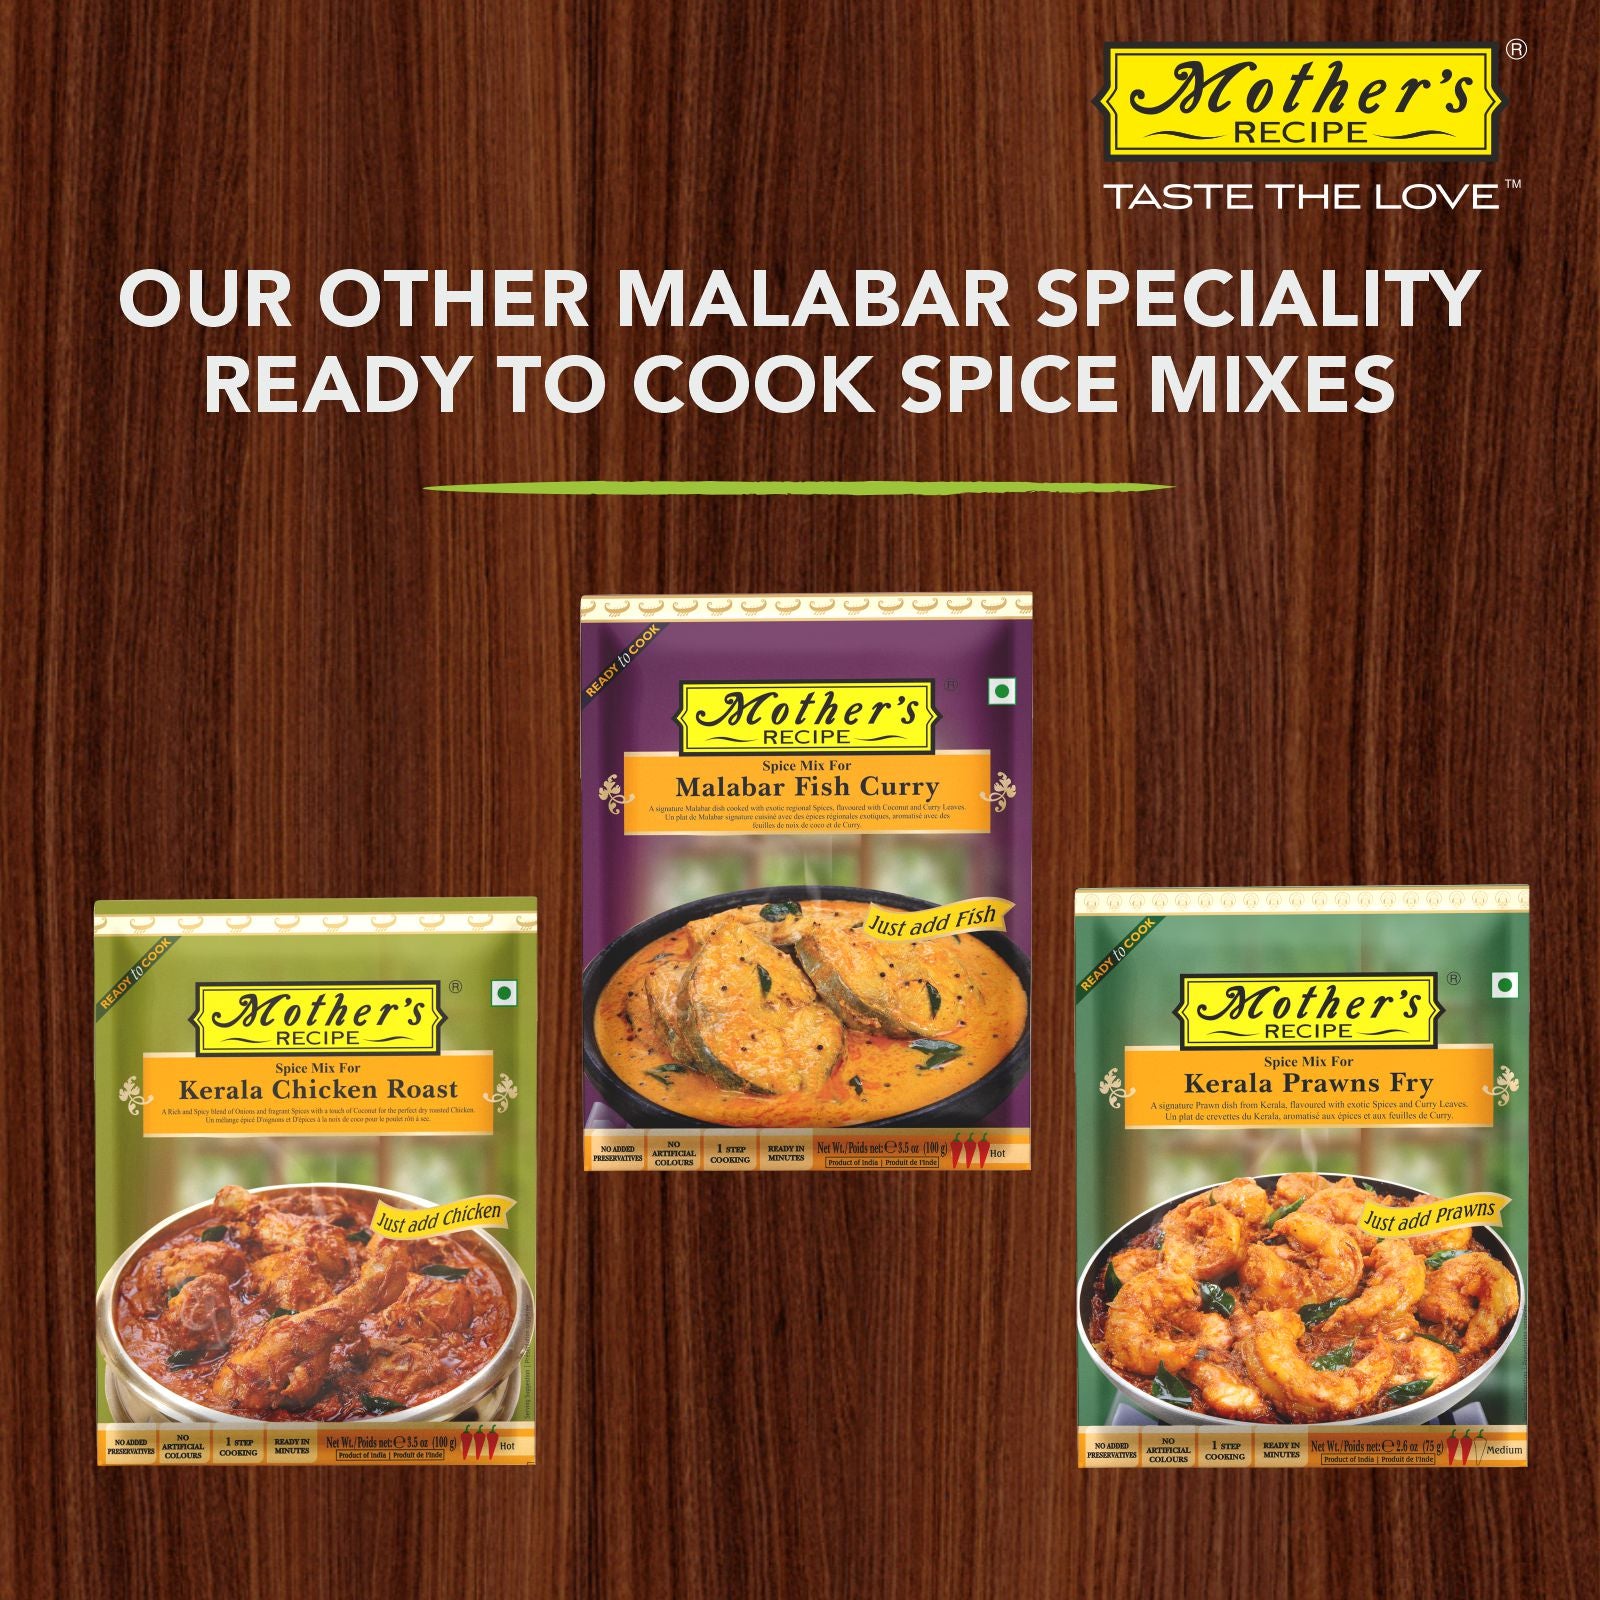 Malabar Chicken Curry 100 gm